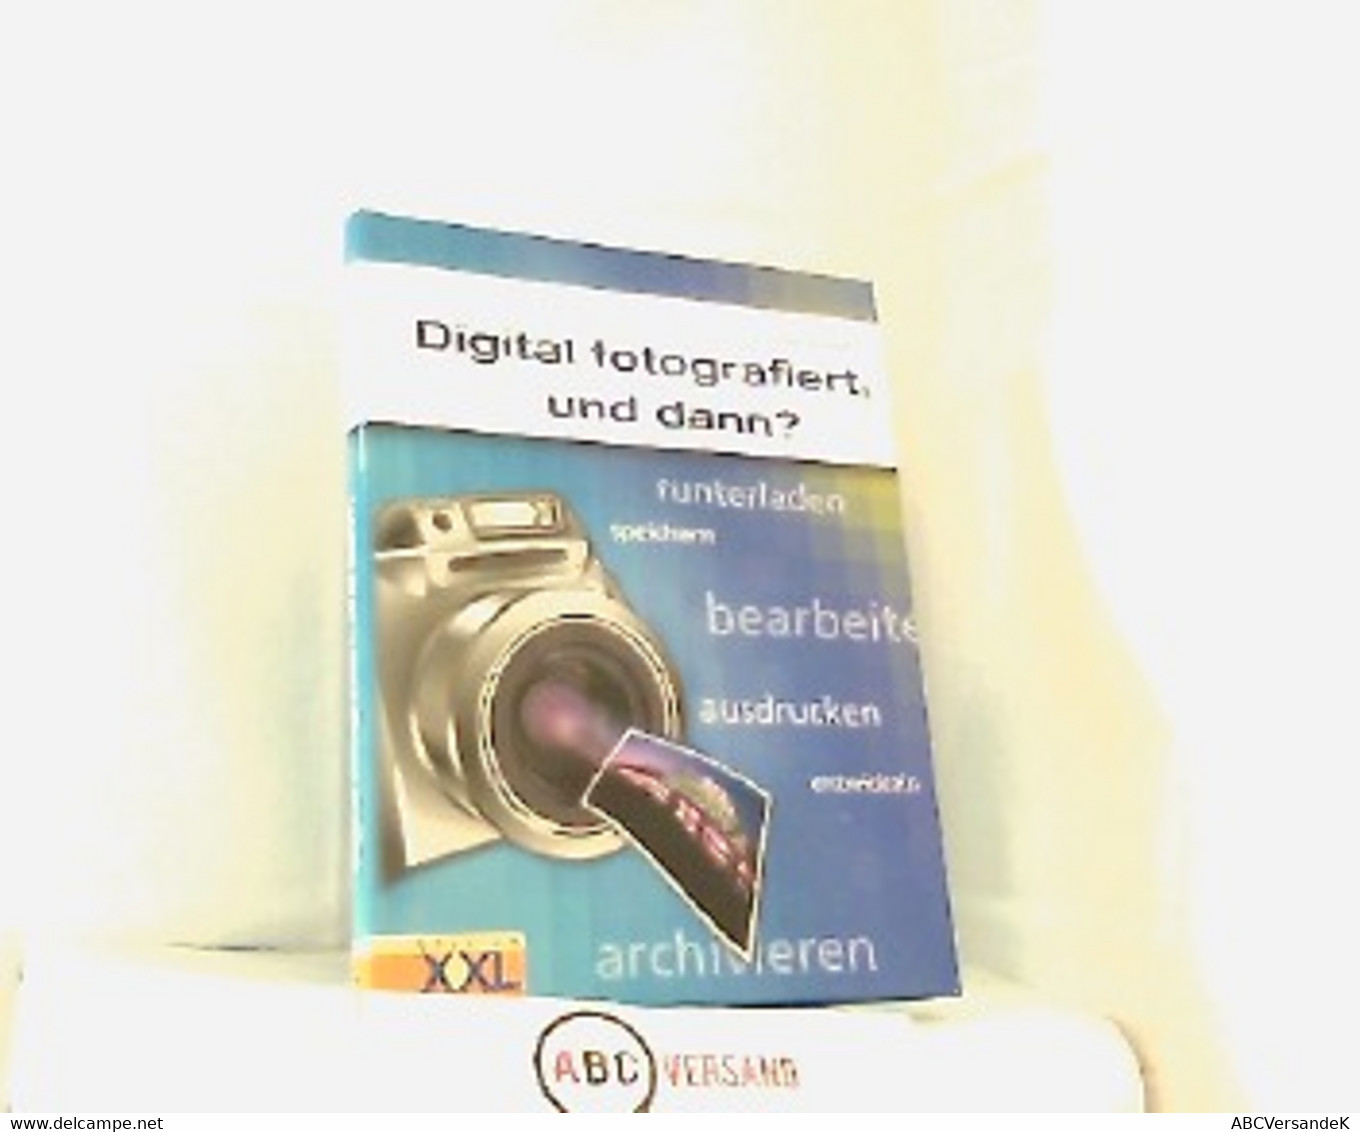 Digital Fotografiert, Und Dann? Runterladen, Speichern, Bearbeiten, Ausdrucken, Entwickeln, Archivieren. - Fotografie